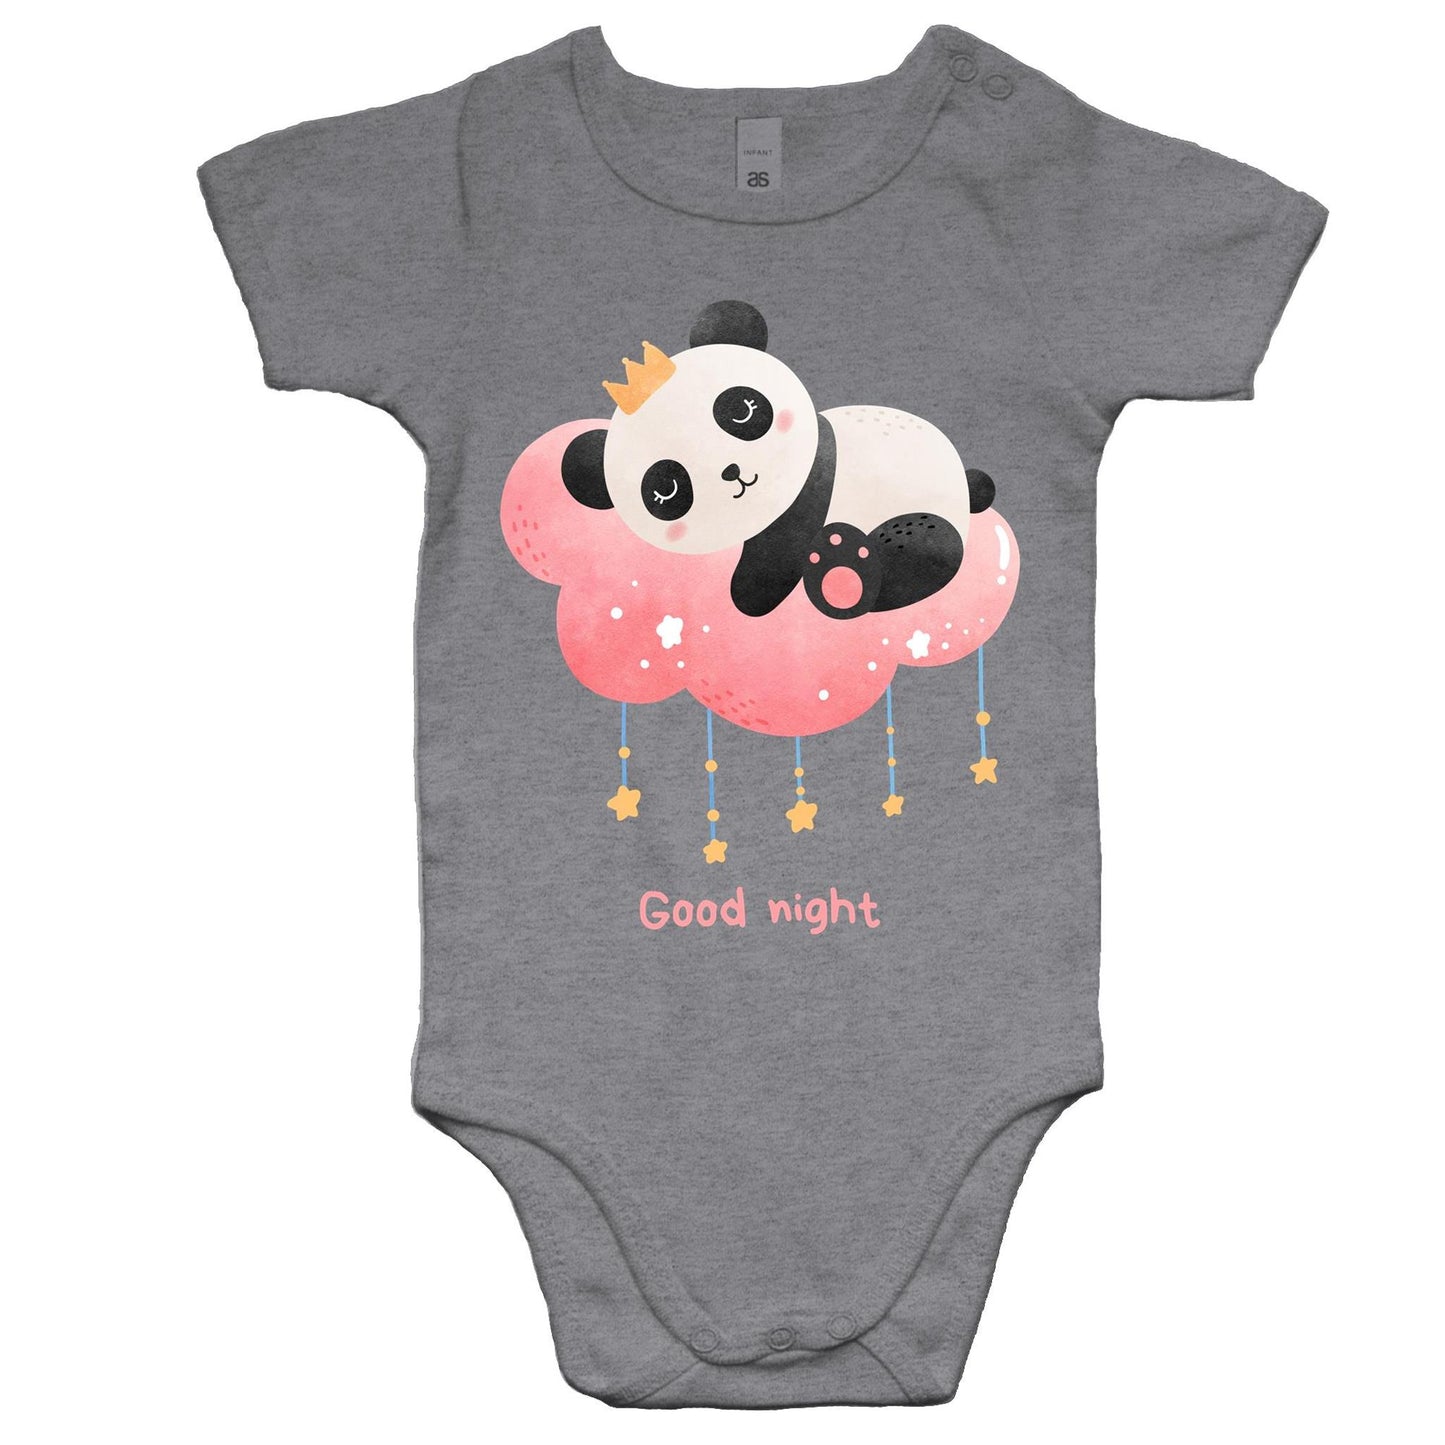 Good Night Panda - Baby Bodysuit Grey Marle Baby Bodysuit animal